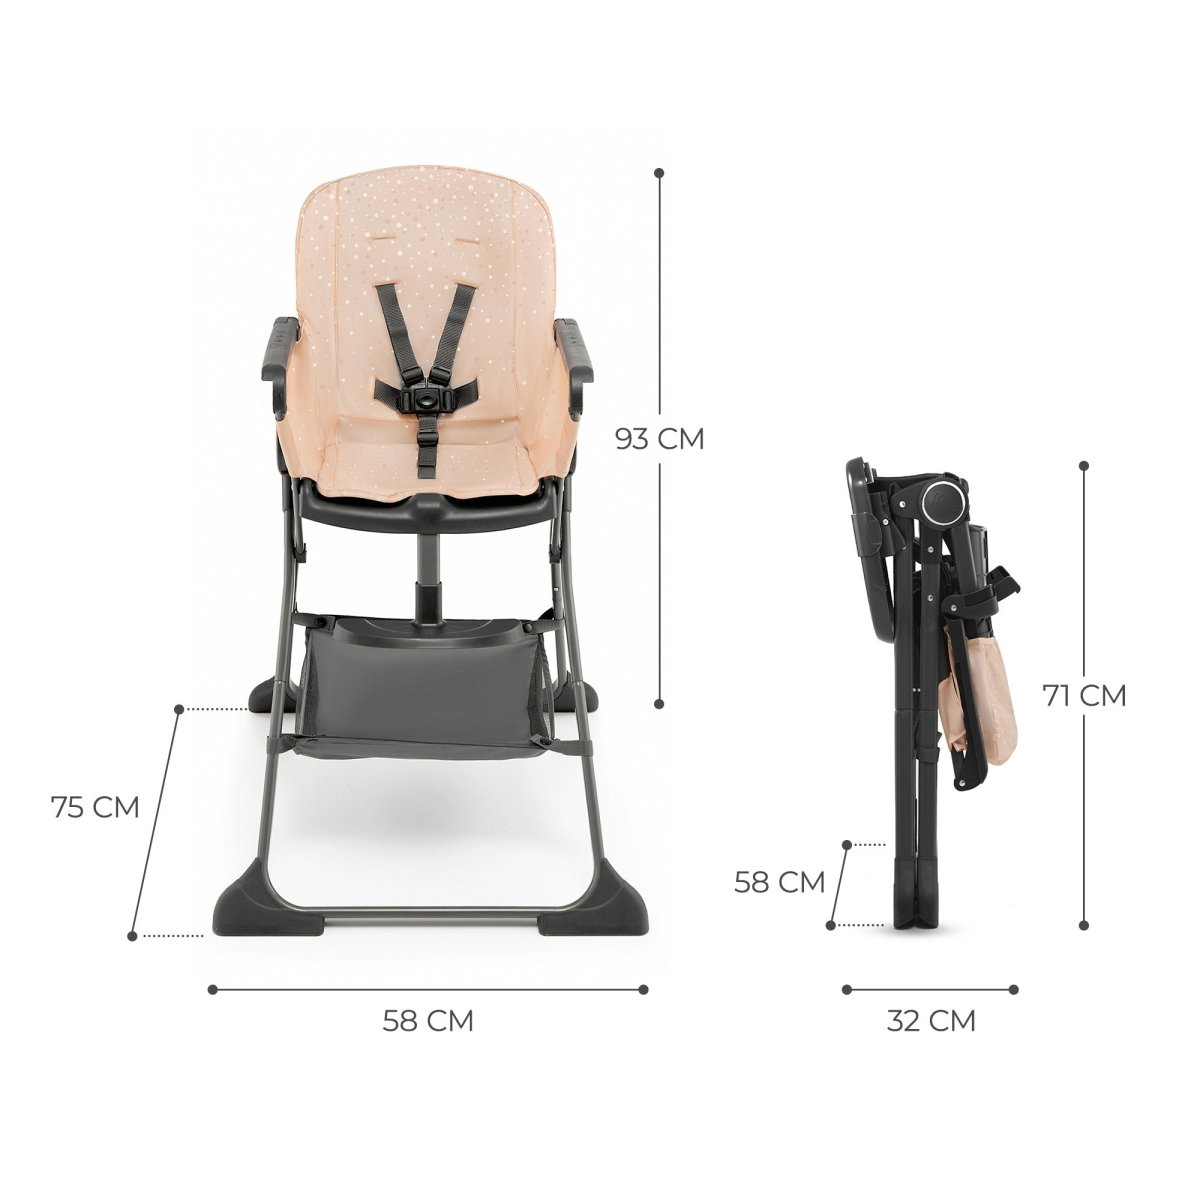 Foldable high chair FOLDEE by Kinderkraft 